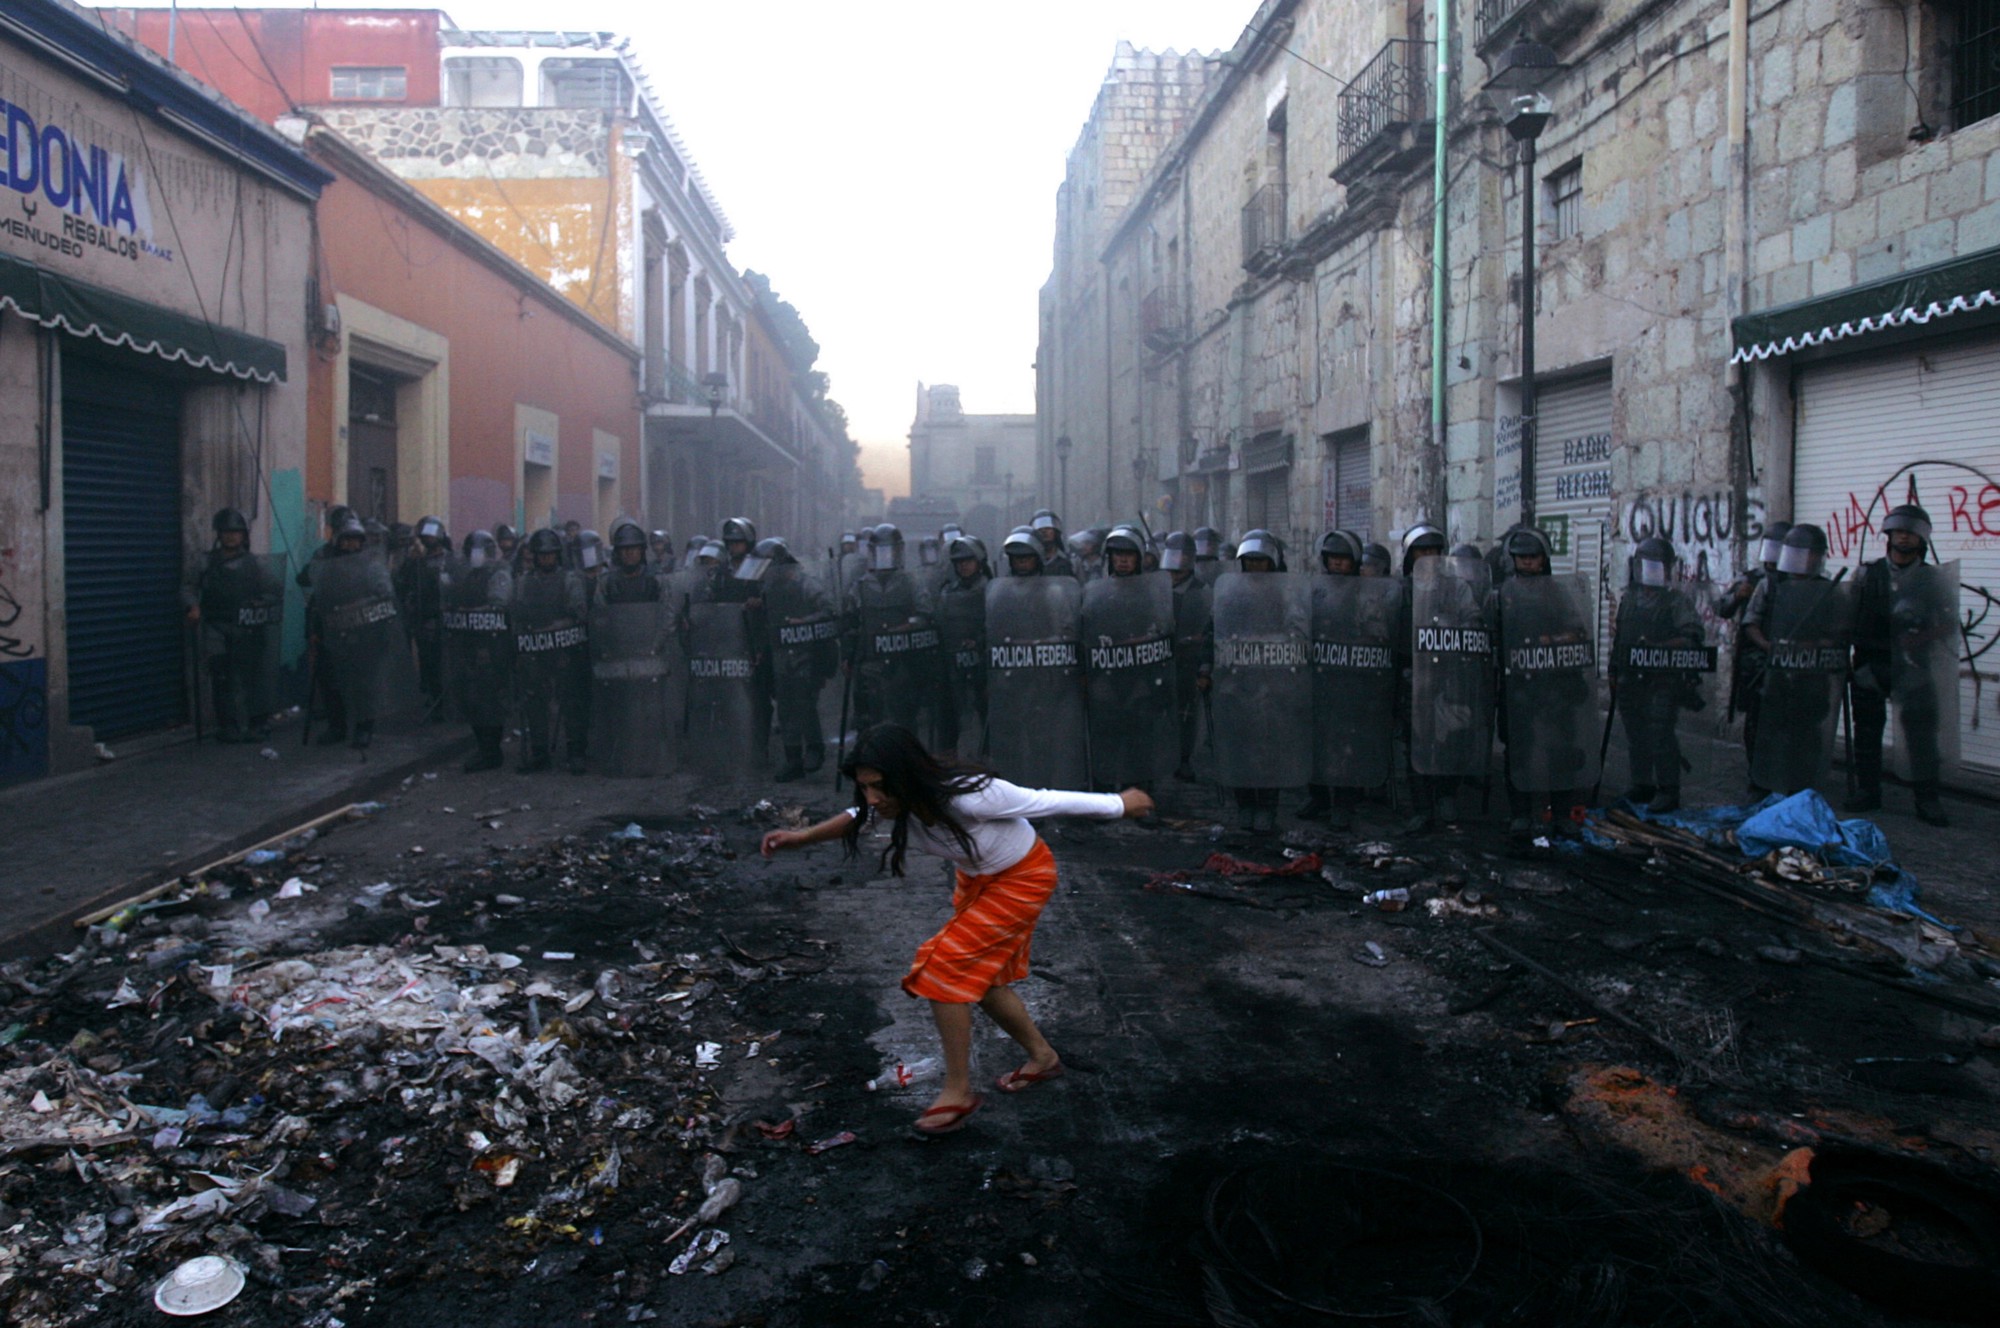 Una mujer pasa frente a un bloqueo de la policía en el centro de Oaxaca de Juárez, Oaxaca. Esto sucedió después de que manifestaciones ocurrieran para exigir la renuncia del gobernador del Estado, Ulises Ruiz.